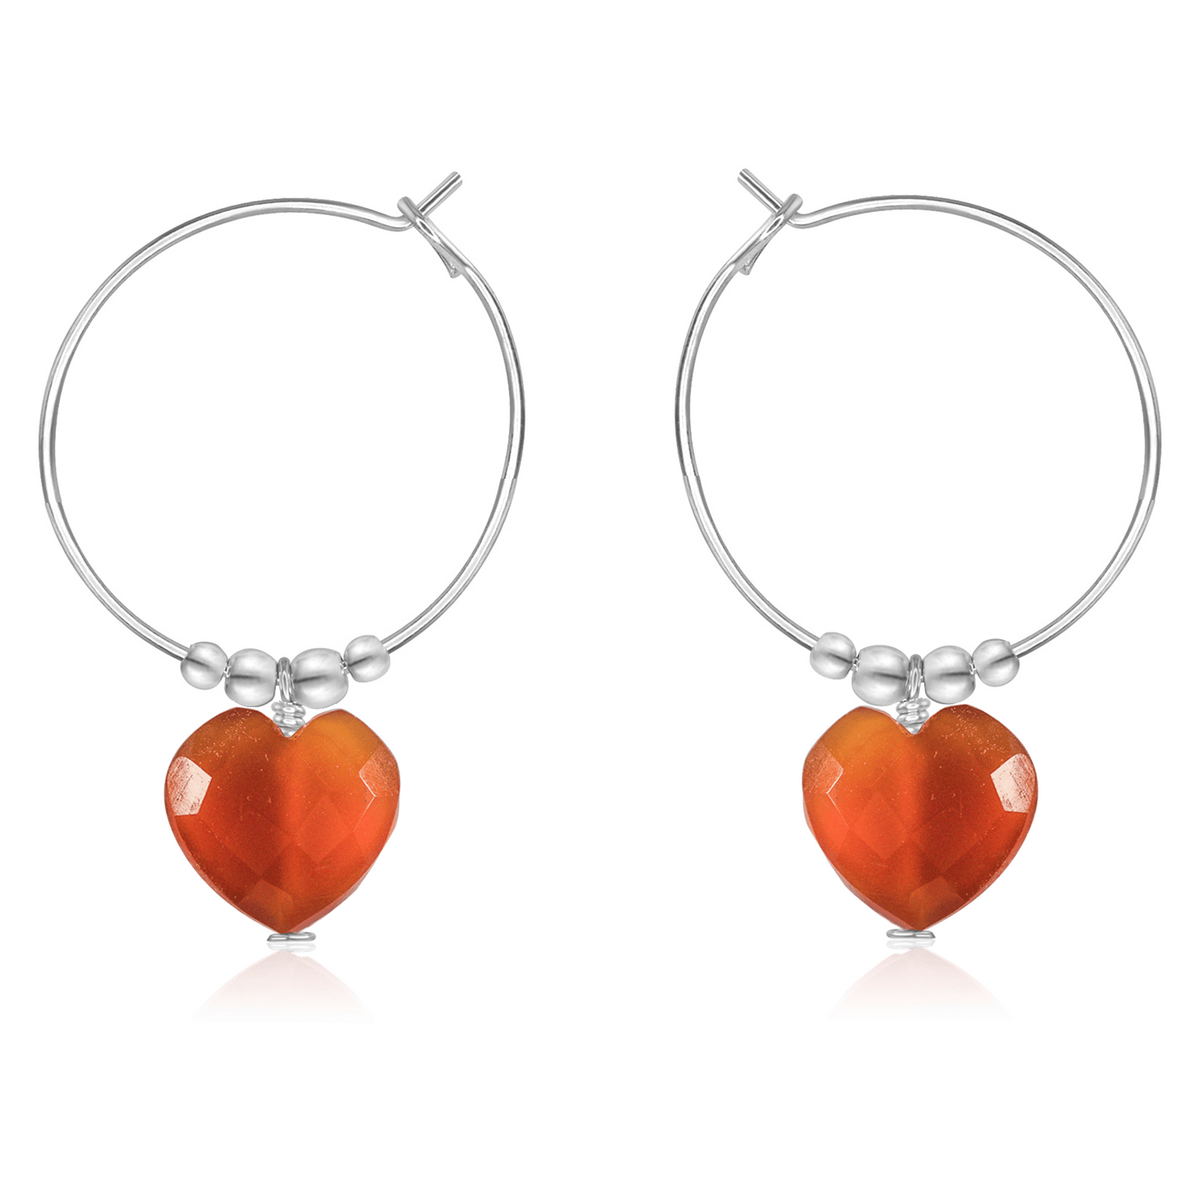 Carnelian Crystal Heart Dangle Hoop Earrings - Carnelian Crystal Heart Dangle Hoop Earrings - Sterling Silver - Luna Tide Handmade Crystal Jewellery